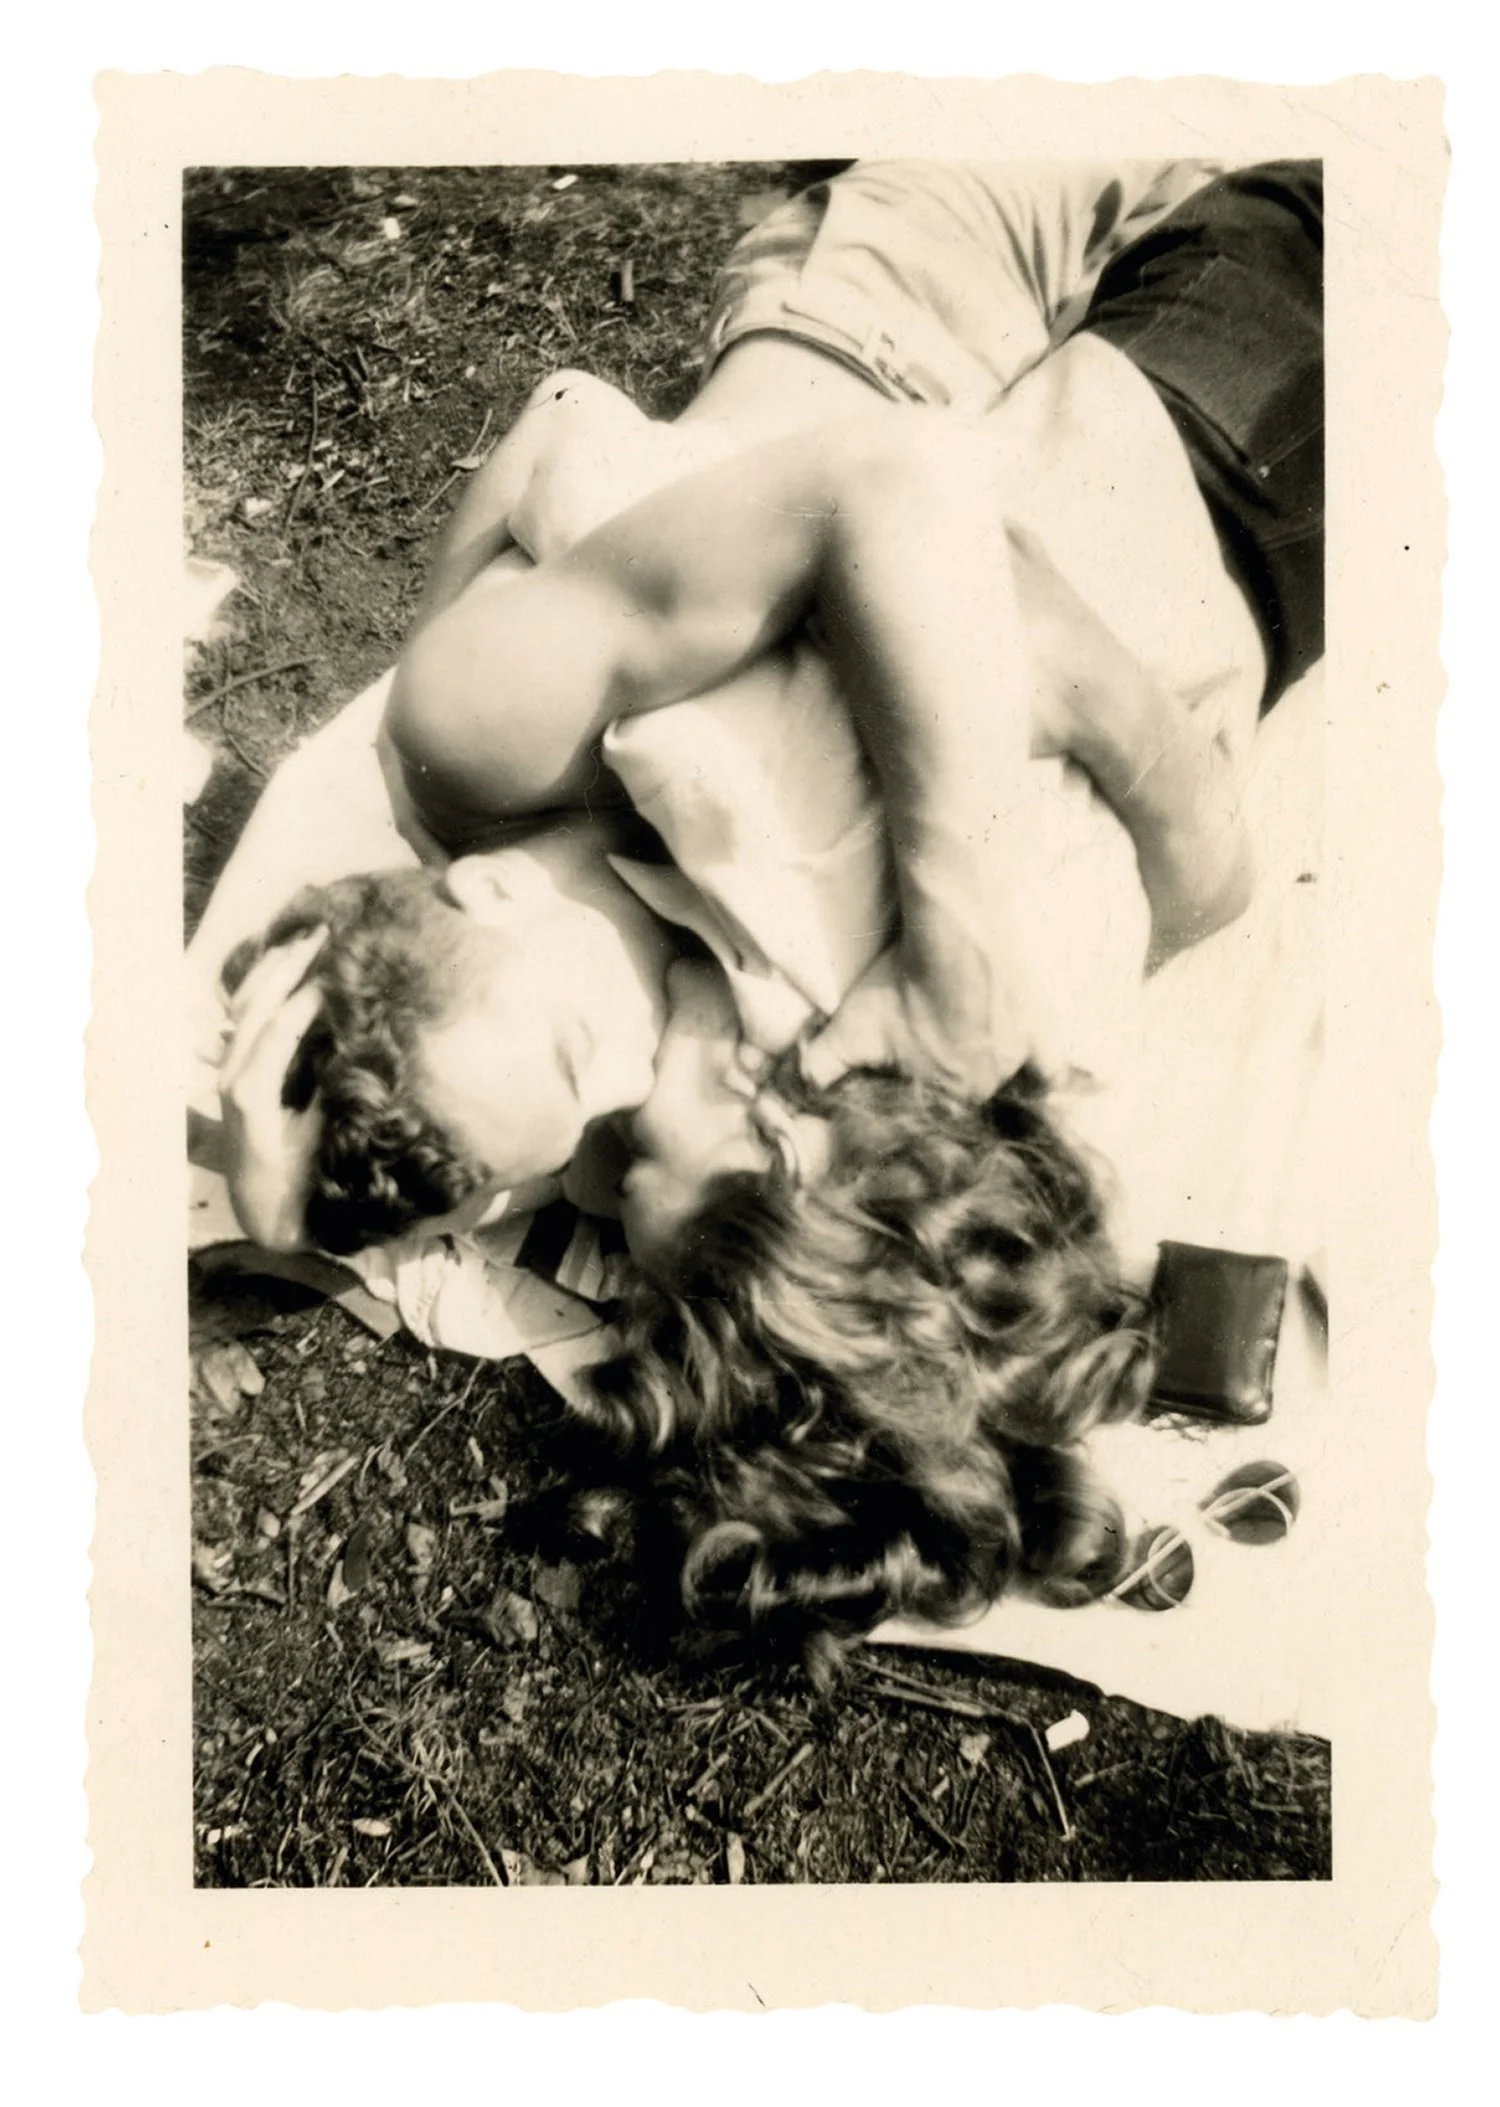 Машина часу: архівні фото про те, як цілувалися закохані 100 років тому - фото 486031